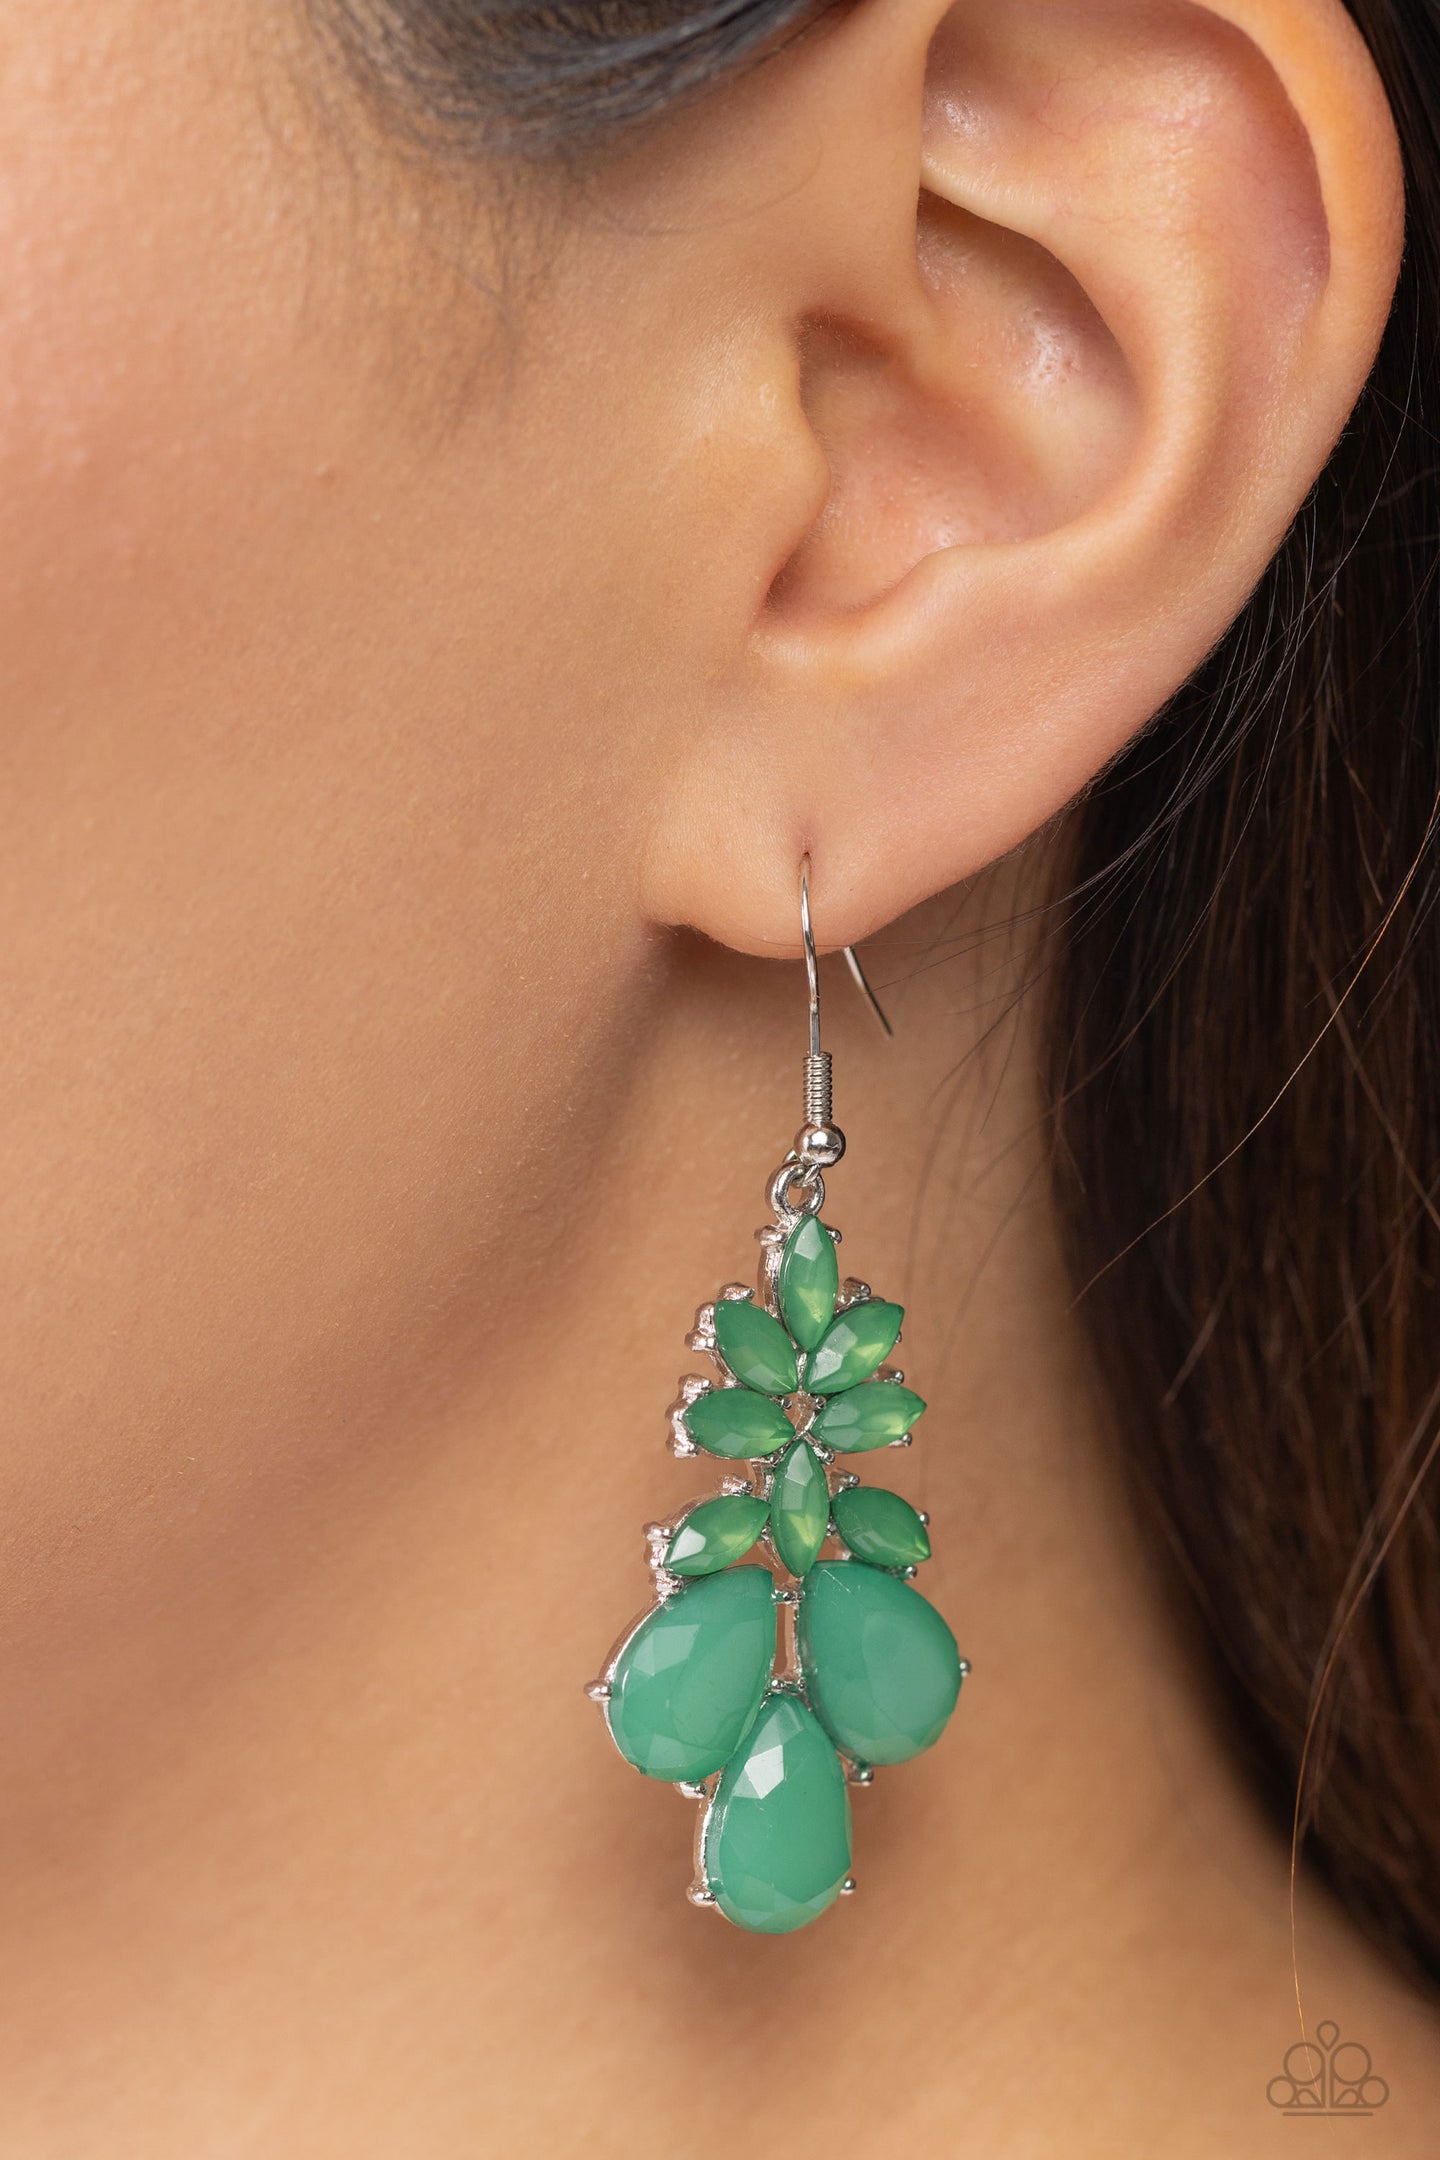 Fashionista Fiesta - Green earrings